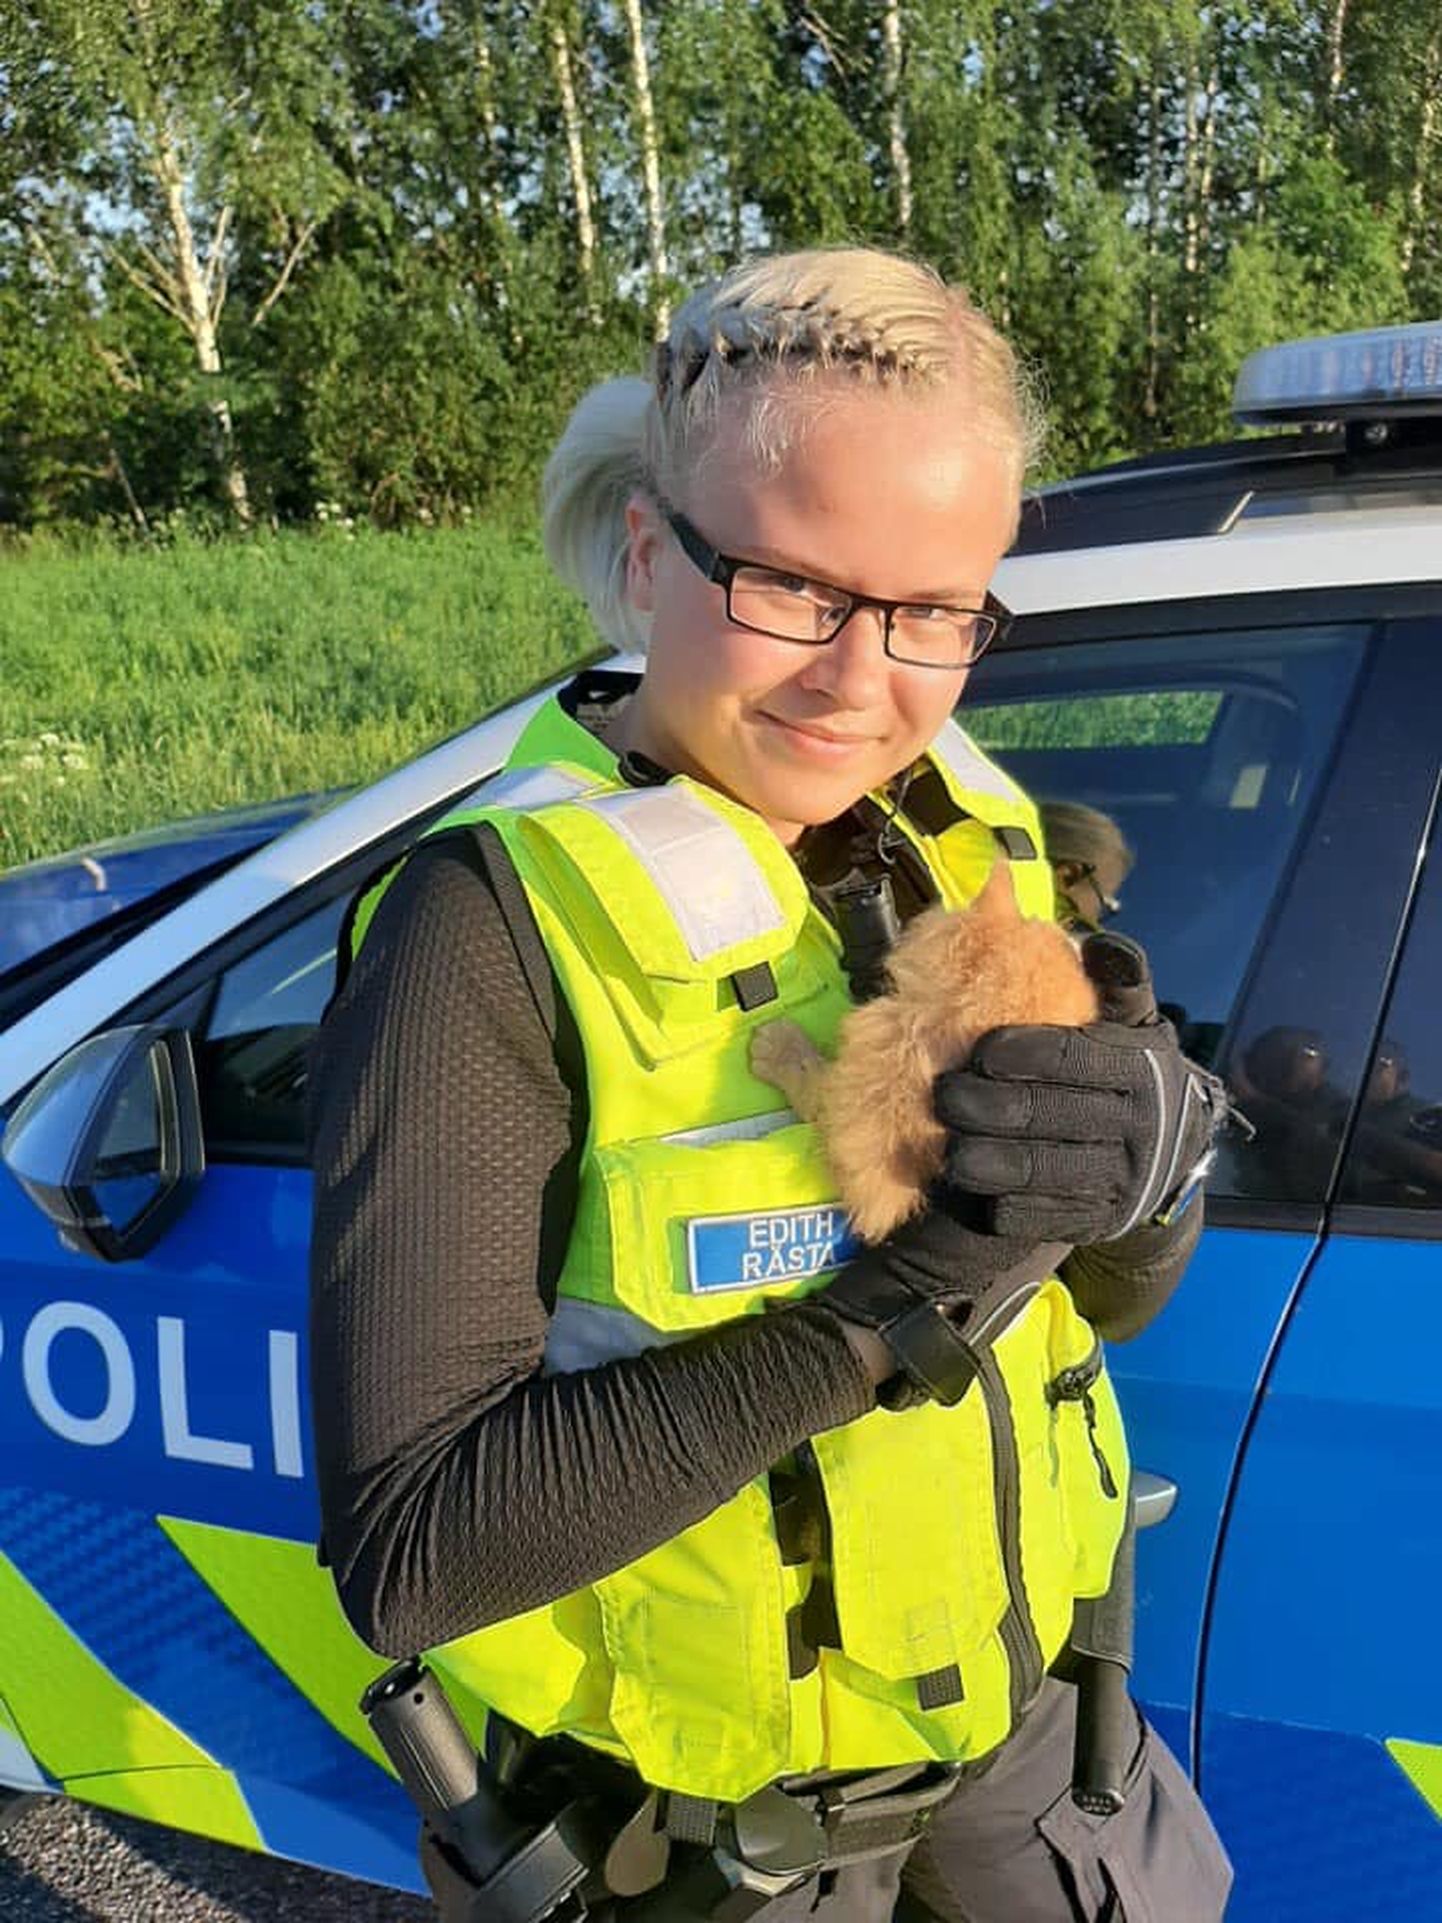 Põlva politseinikud püüdsid Tännassilma-Peri teel silkava kassipoja kinni ja andsid ta üle valla esindajale. Fotol hoiab kassipoega Põlva patrullpolitseinik Edith Rästa.